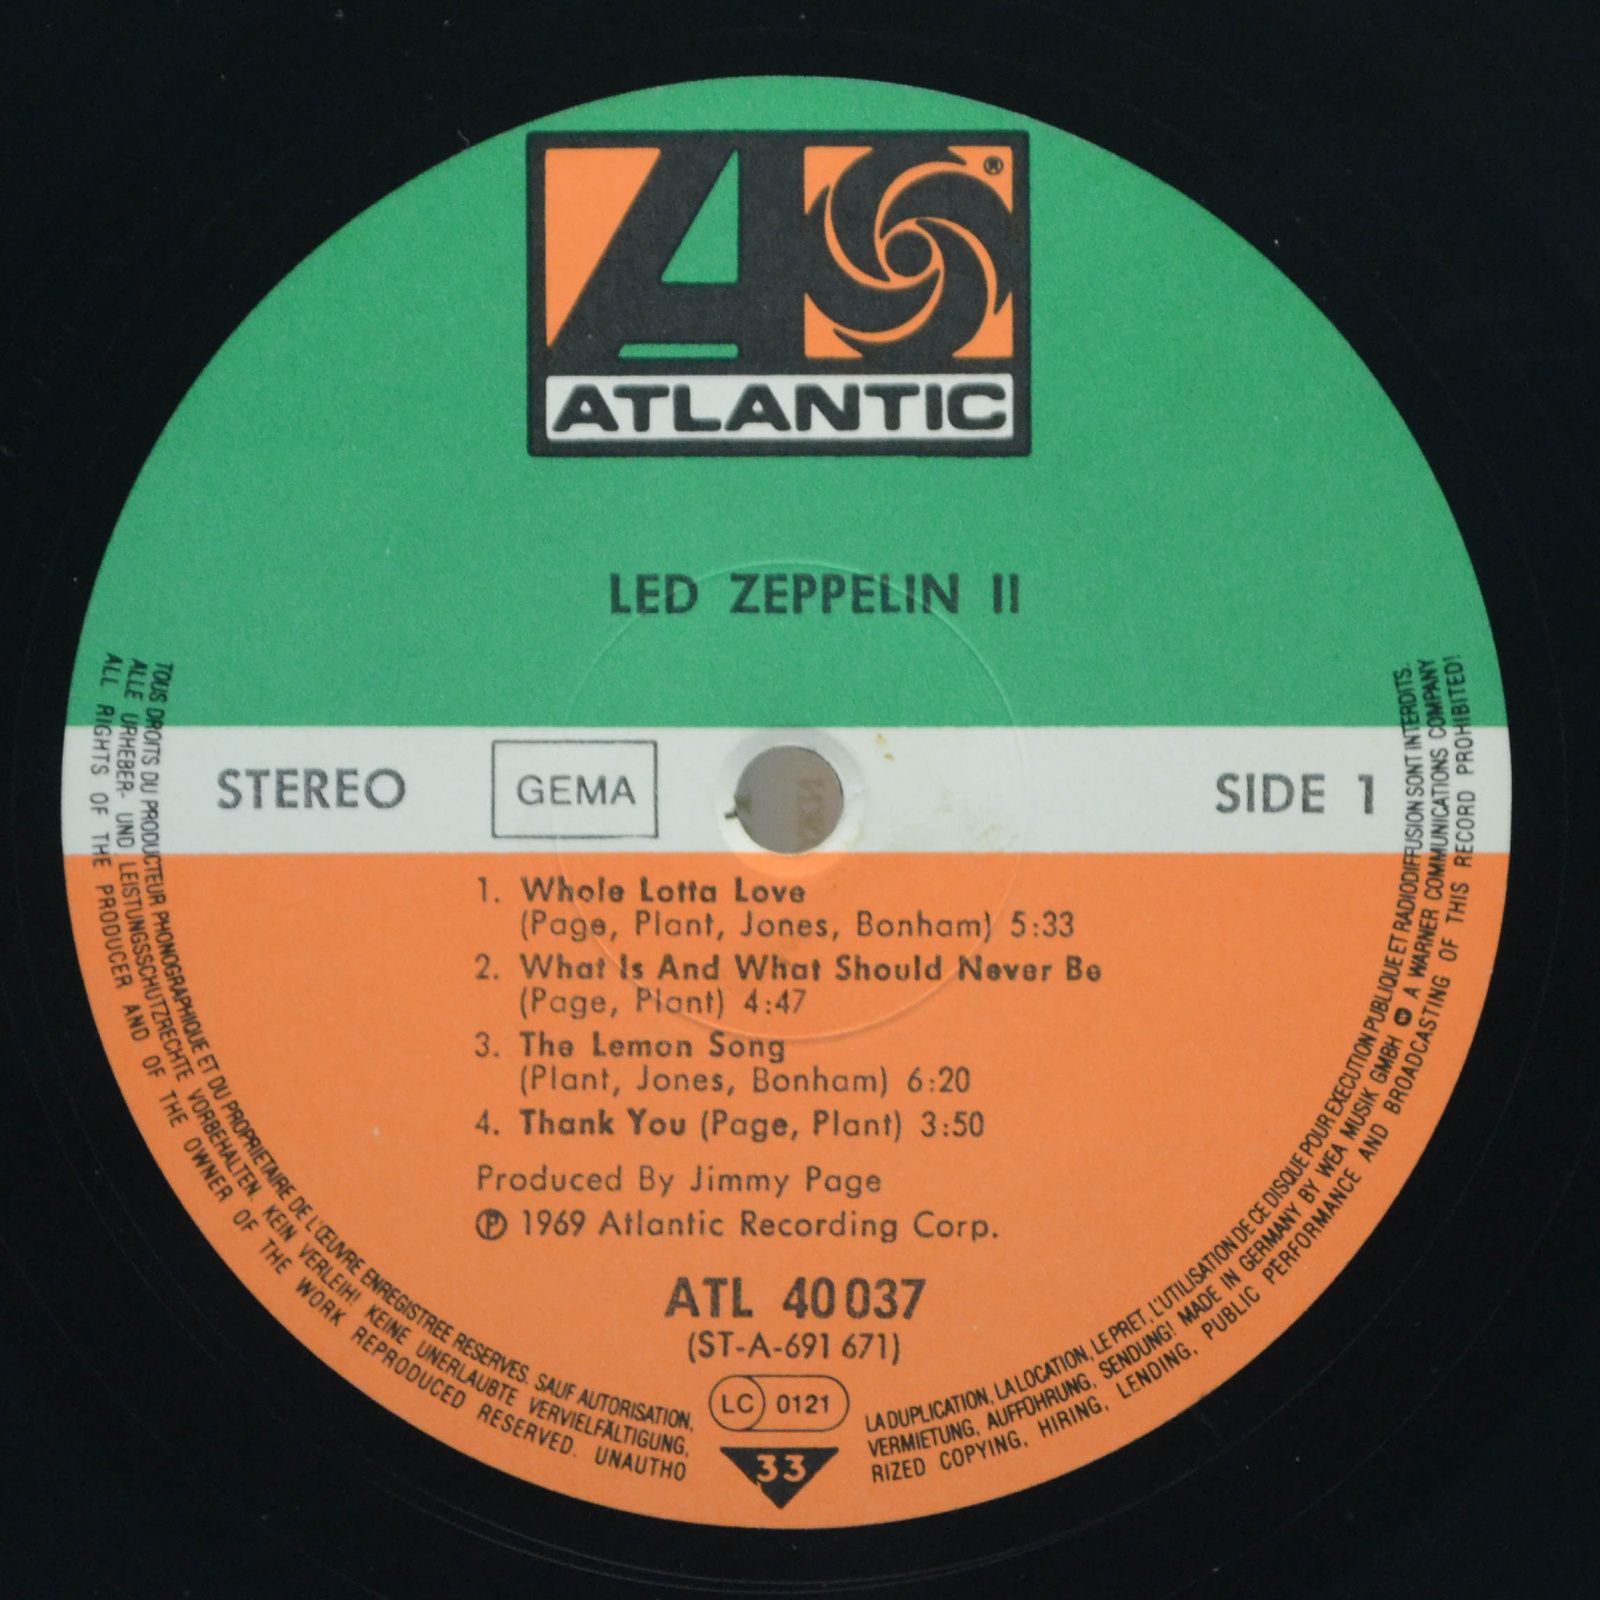 Led Zeppelin — Led Zeppelin II, 1969